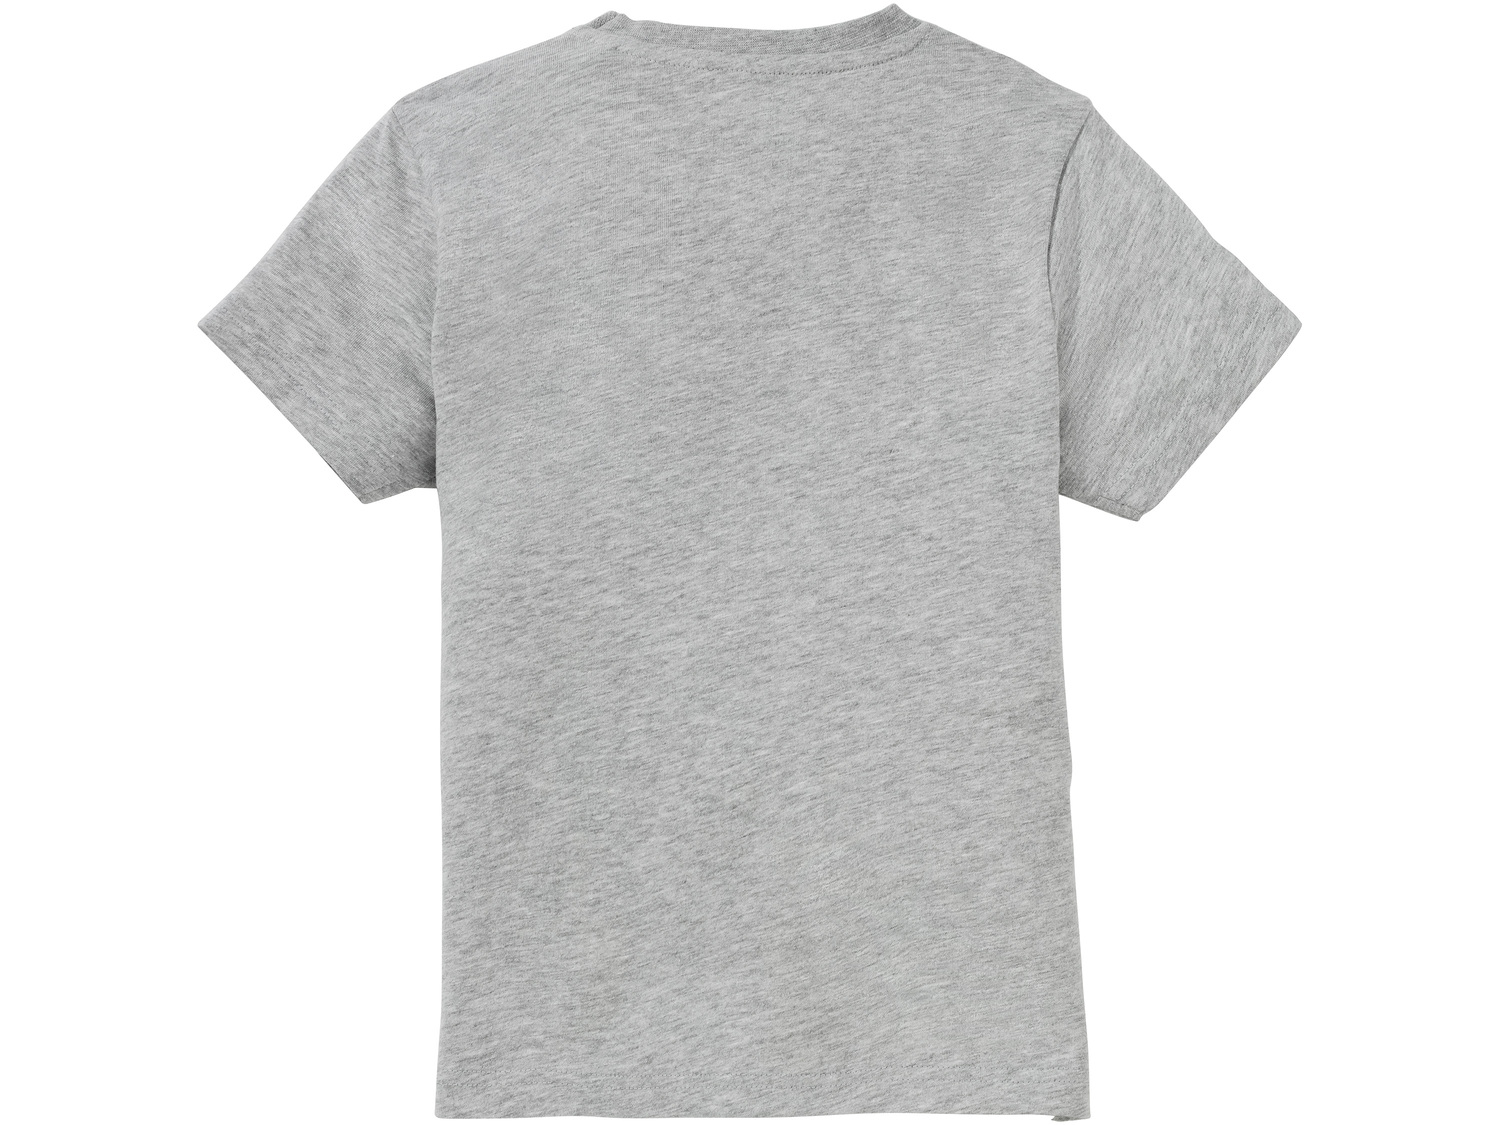 T-shirt chłopięcy z bawełny Pepperts, cena 14,99 PLN 
- rozmiary: 146-176
- 95% ...